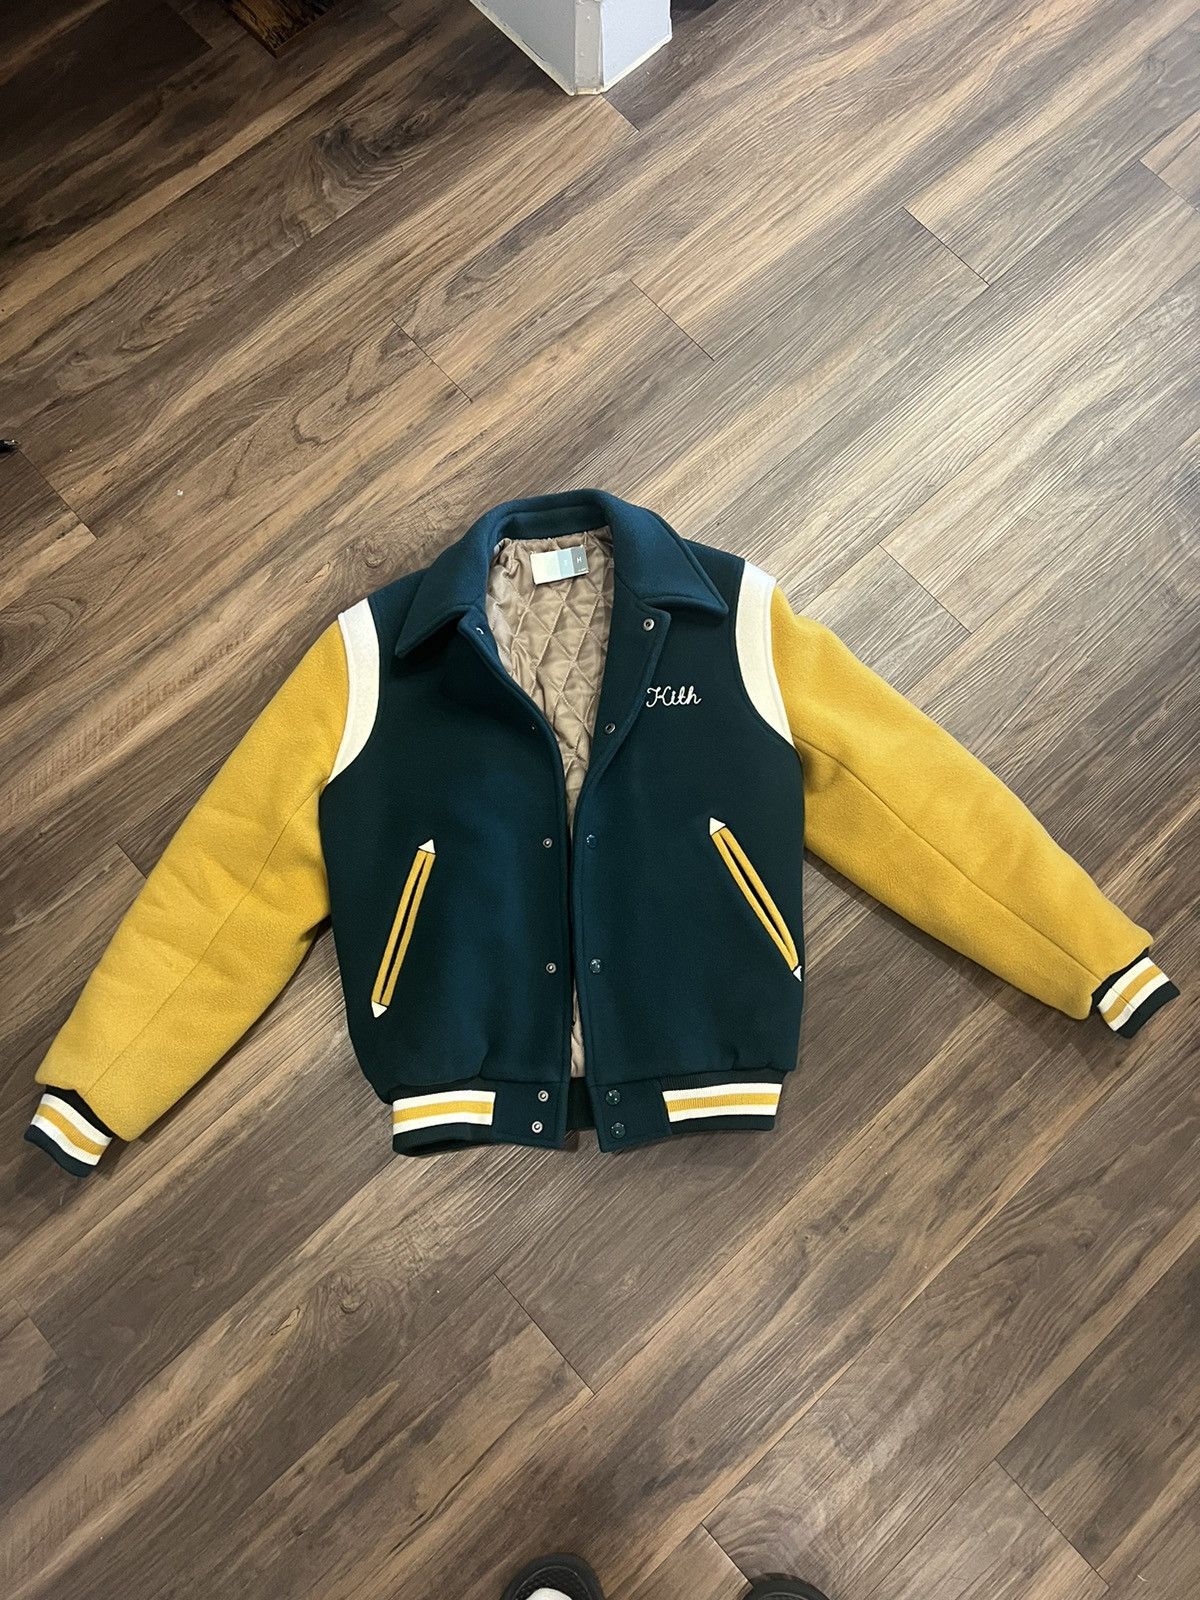 Kith Kith Varsity Coaches Jacket | Grailed